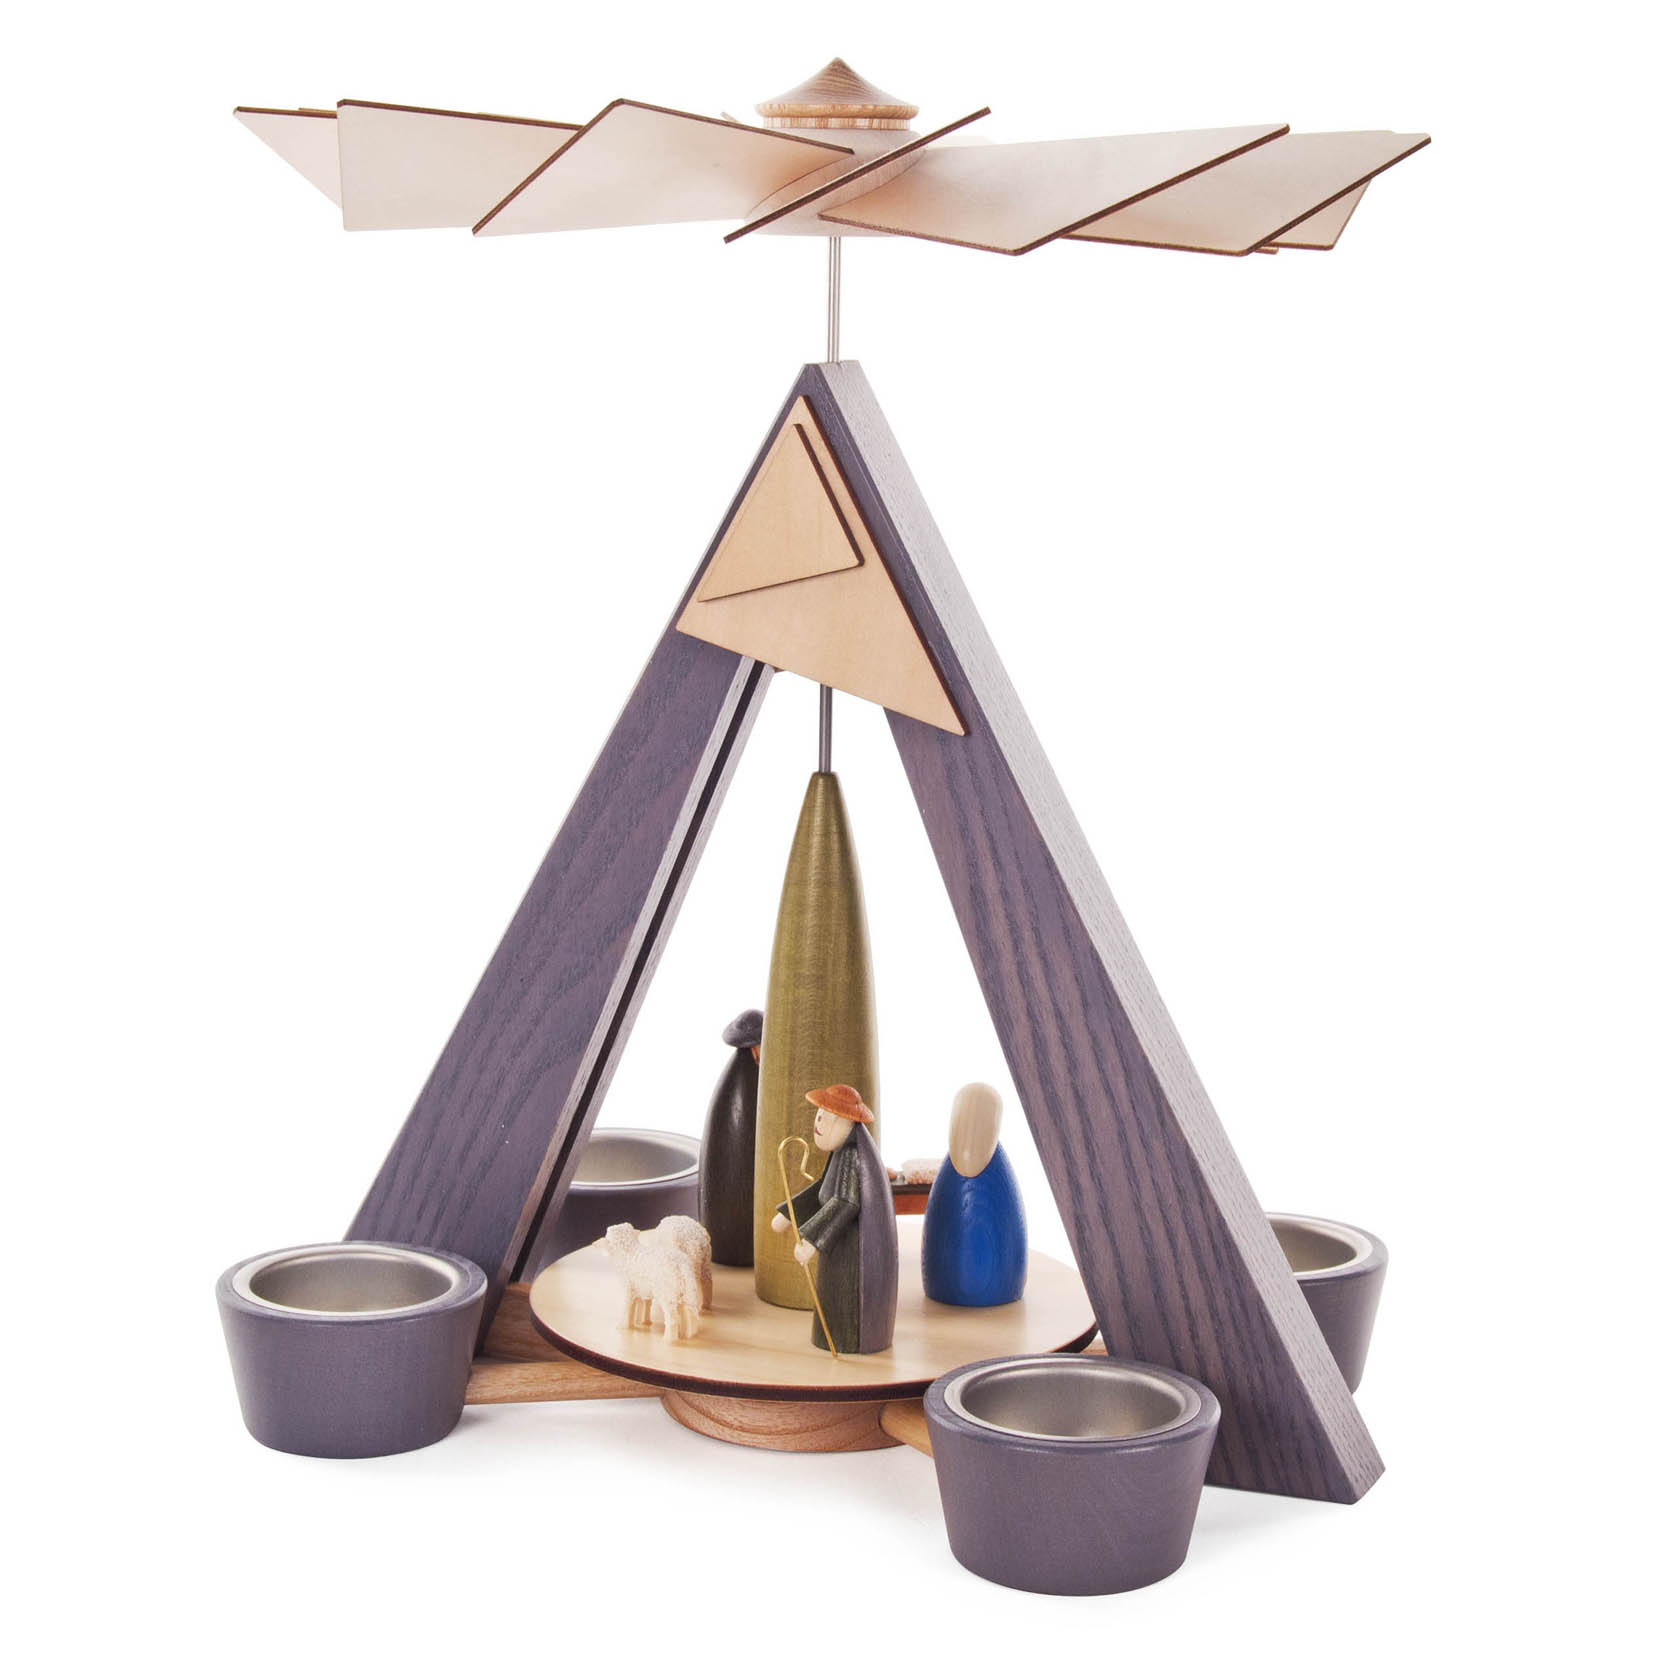 Pyramide mit Christi Geburt, grau mit farbig lasierten Figuren, für Teelichte